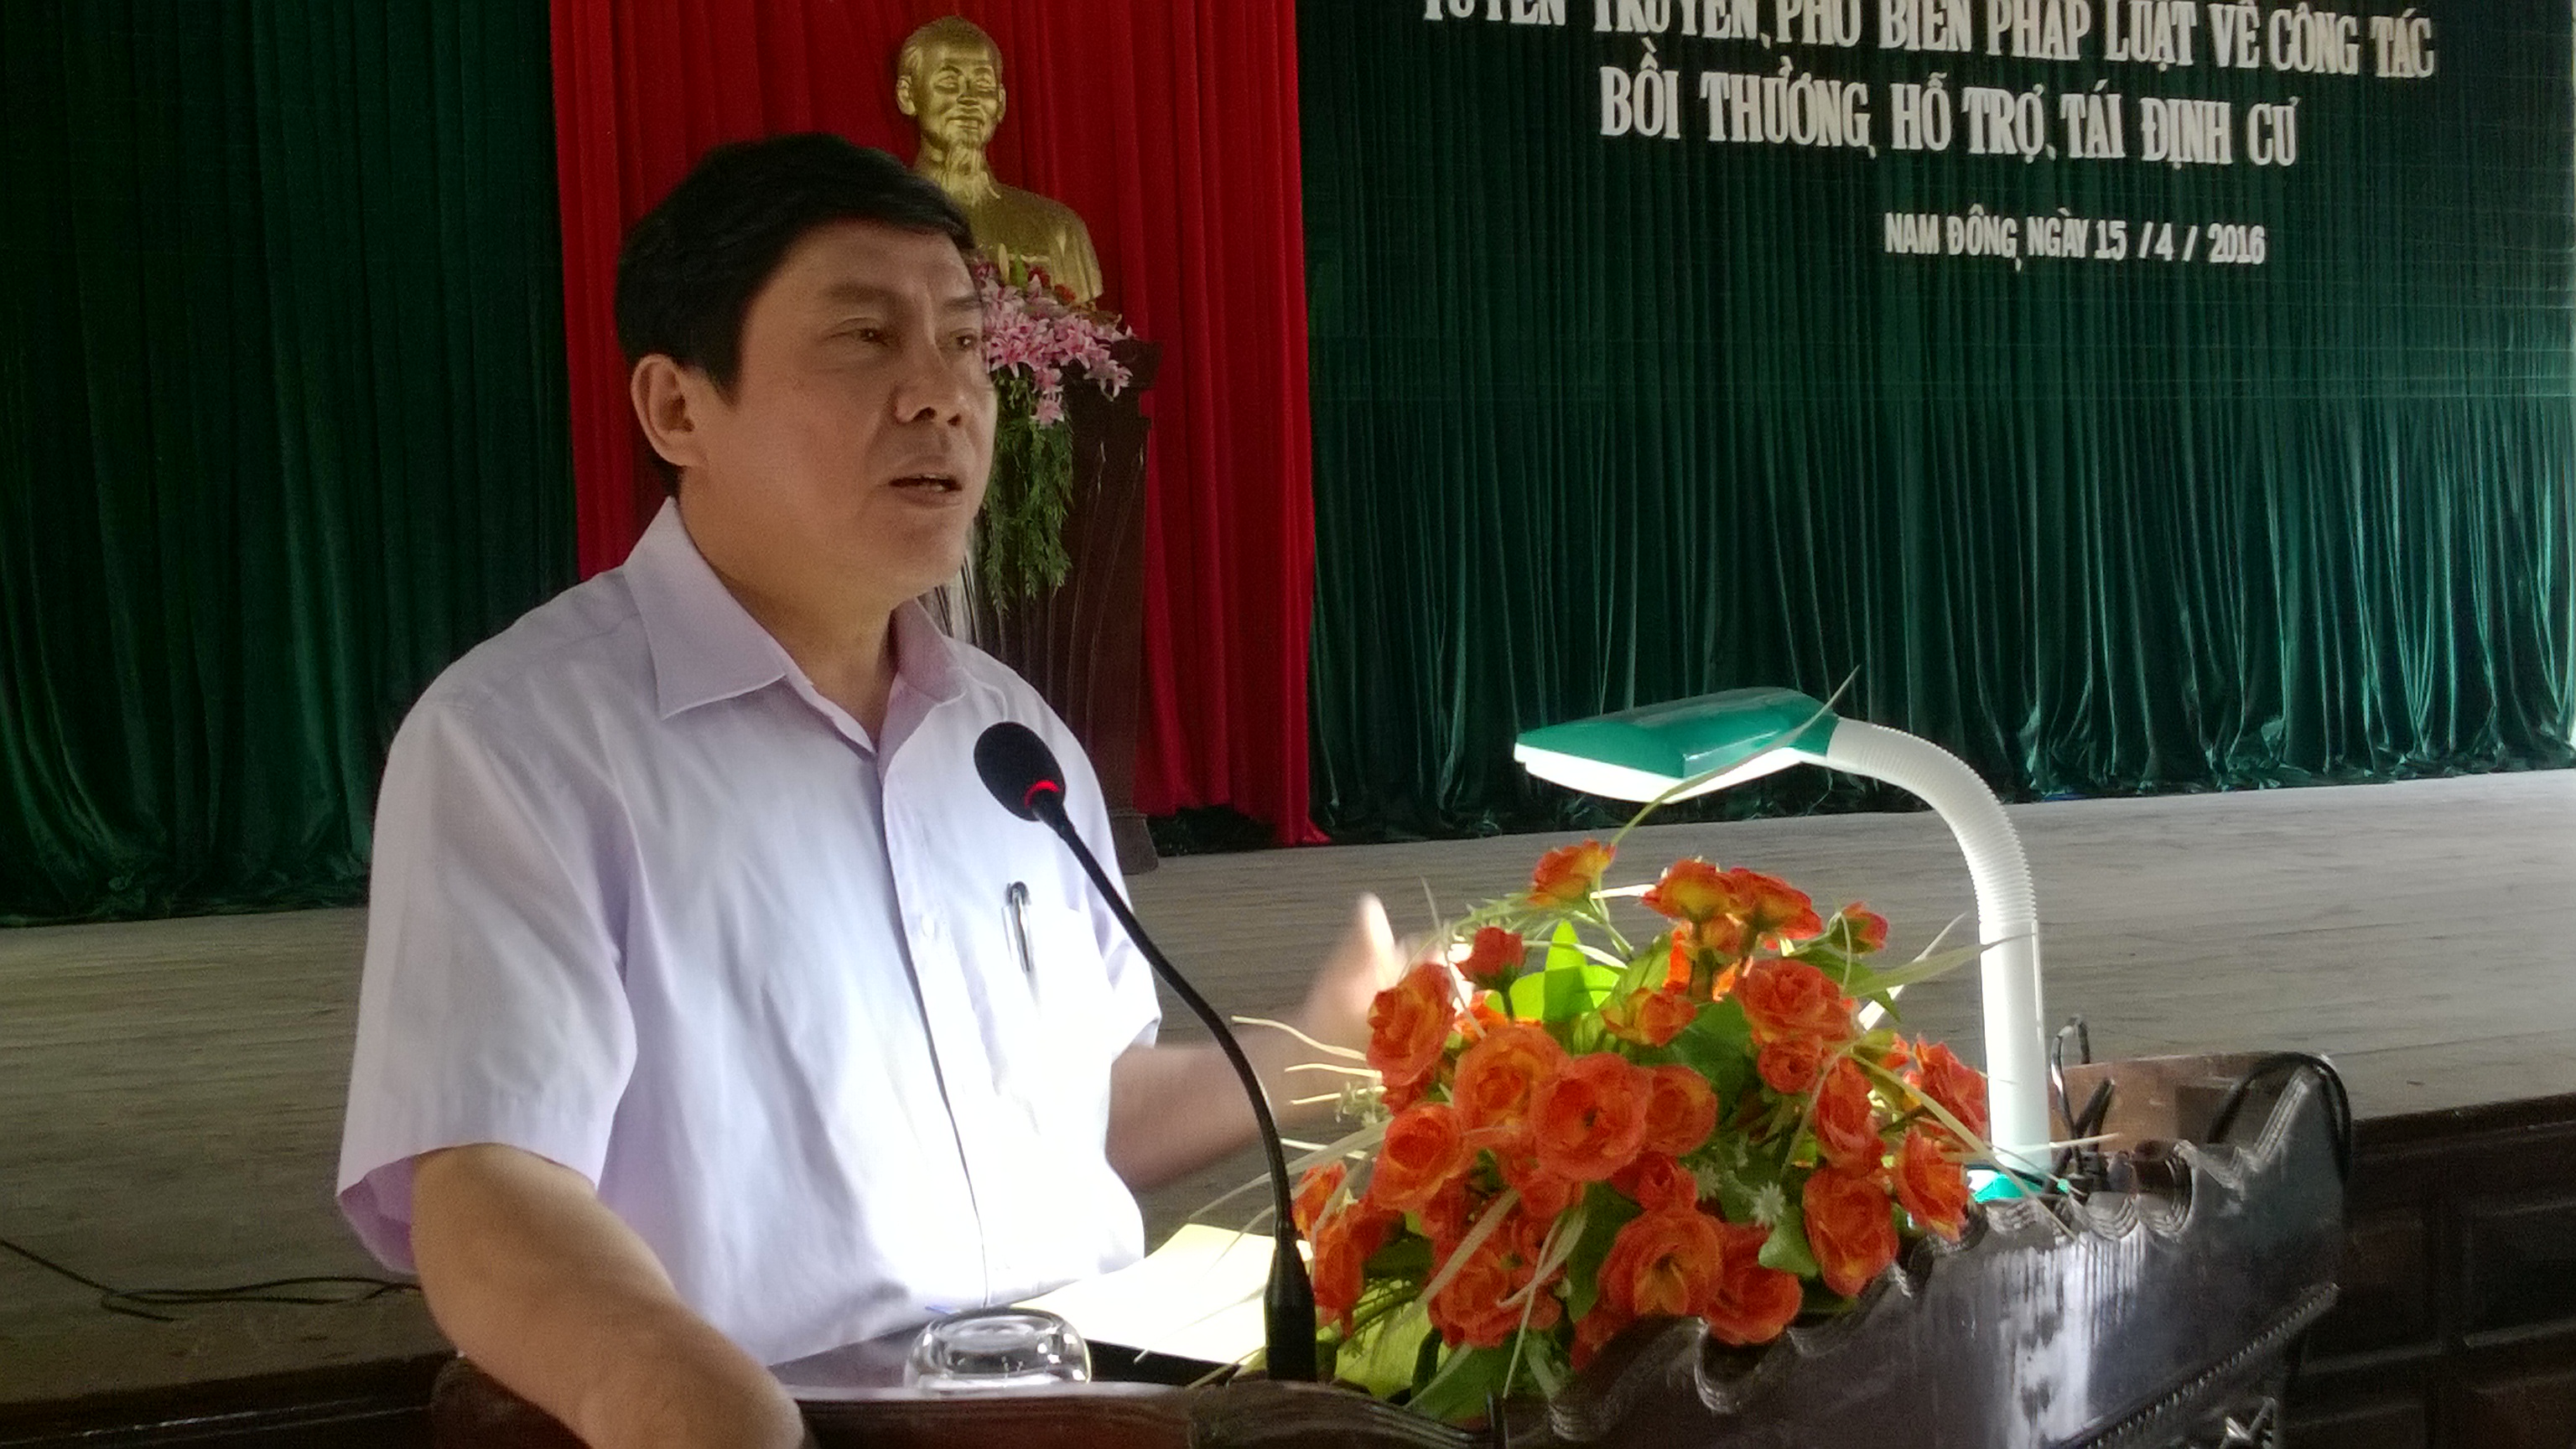 Ông Lê Đăng Huề - Huyện ủy viên, Chánh thanh tra huyện trình bày tại hội nghị